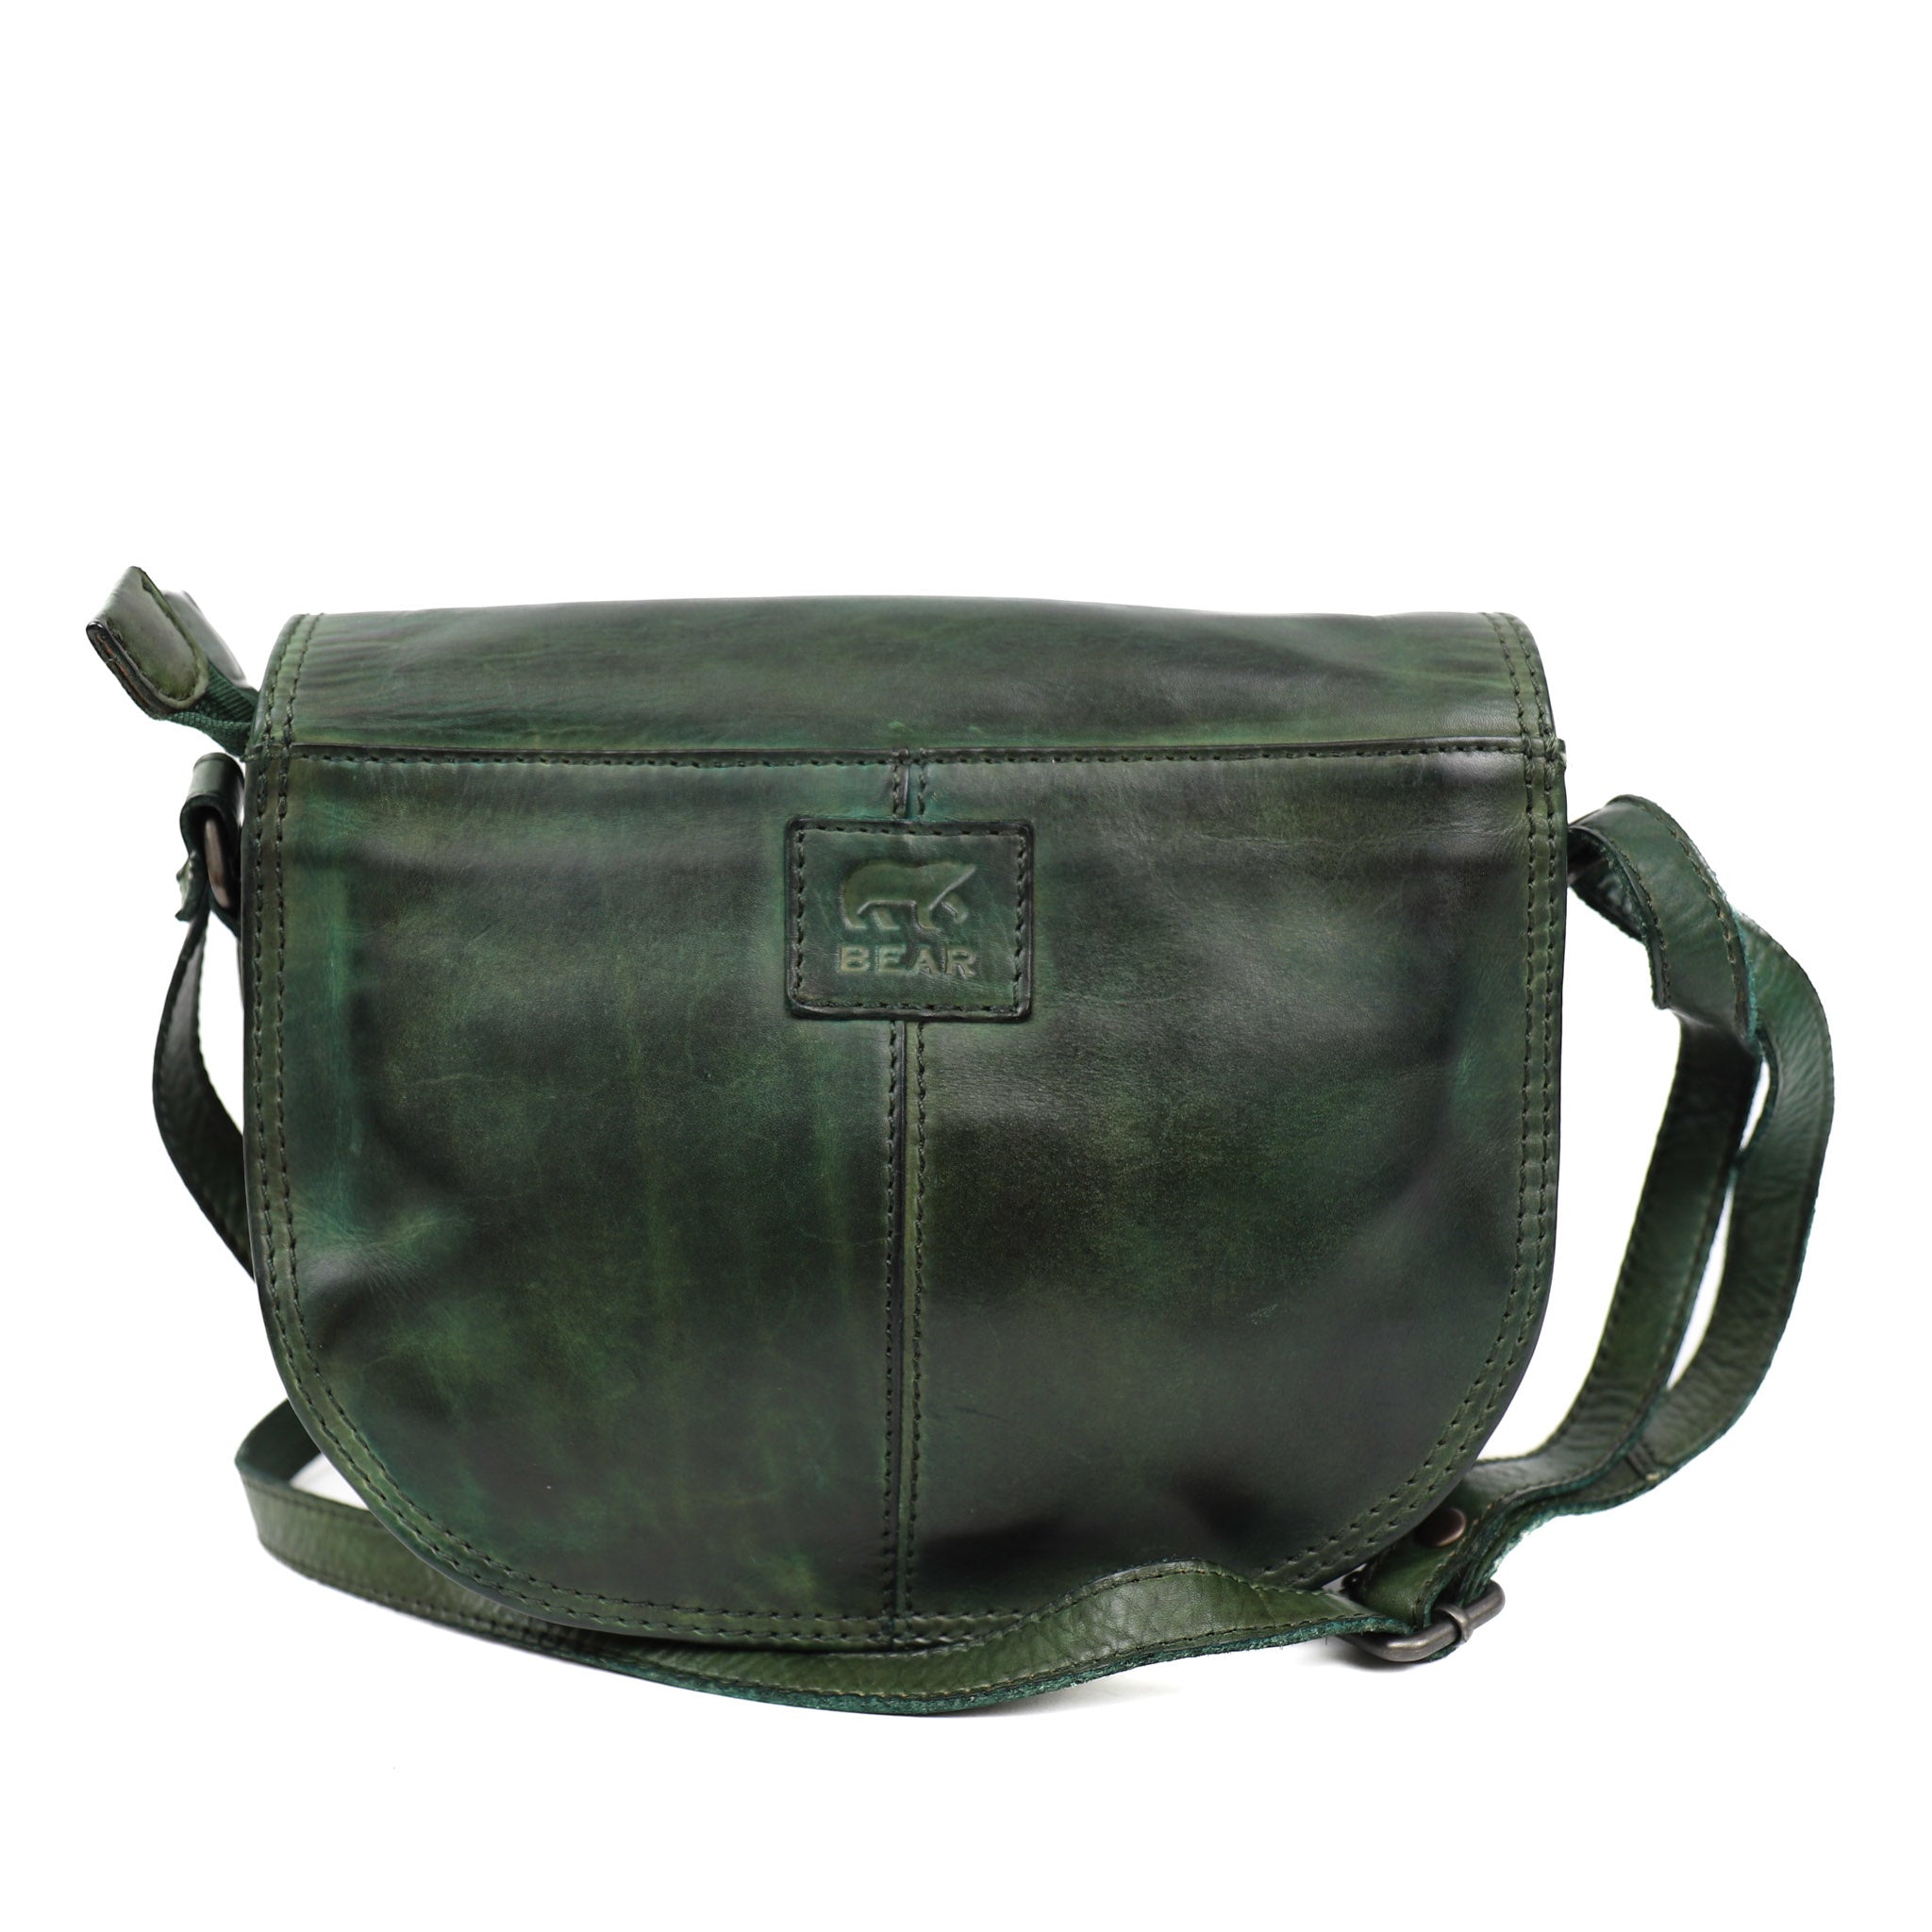 Shoulder bag 'Gigi' green - CL 41770